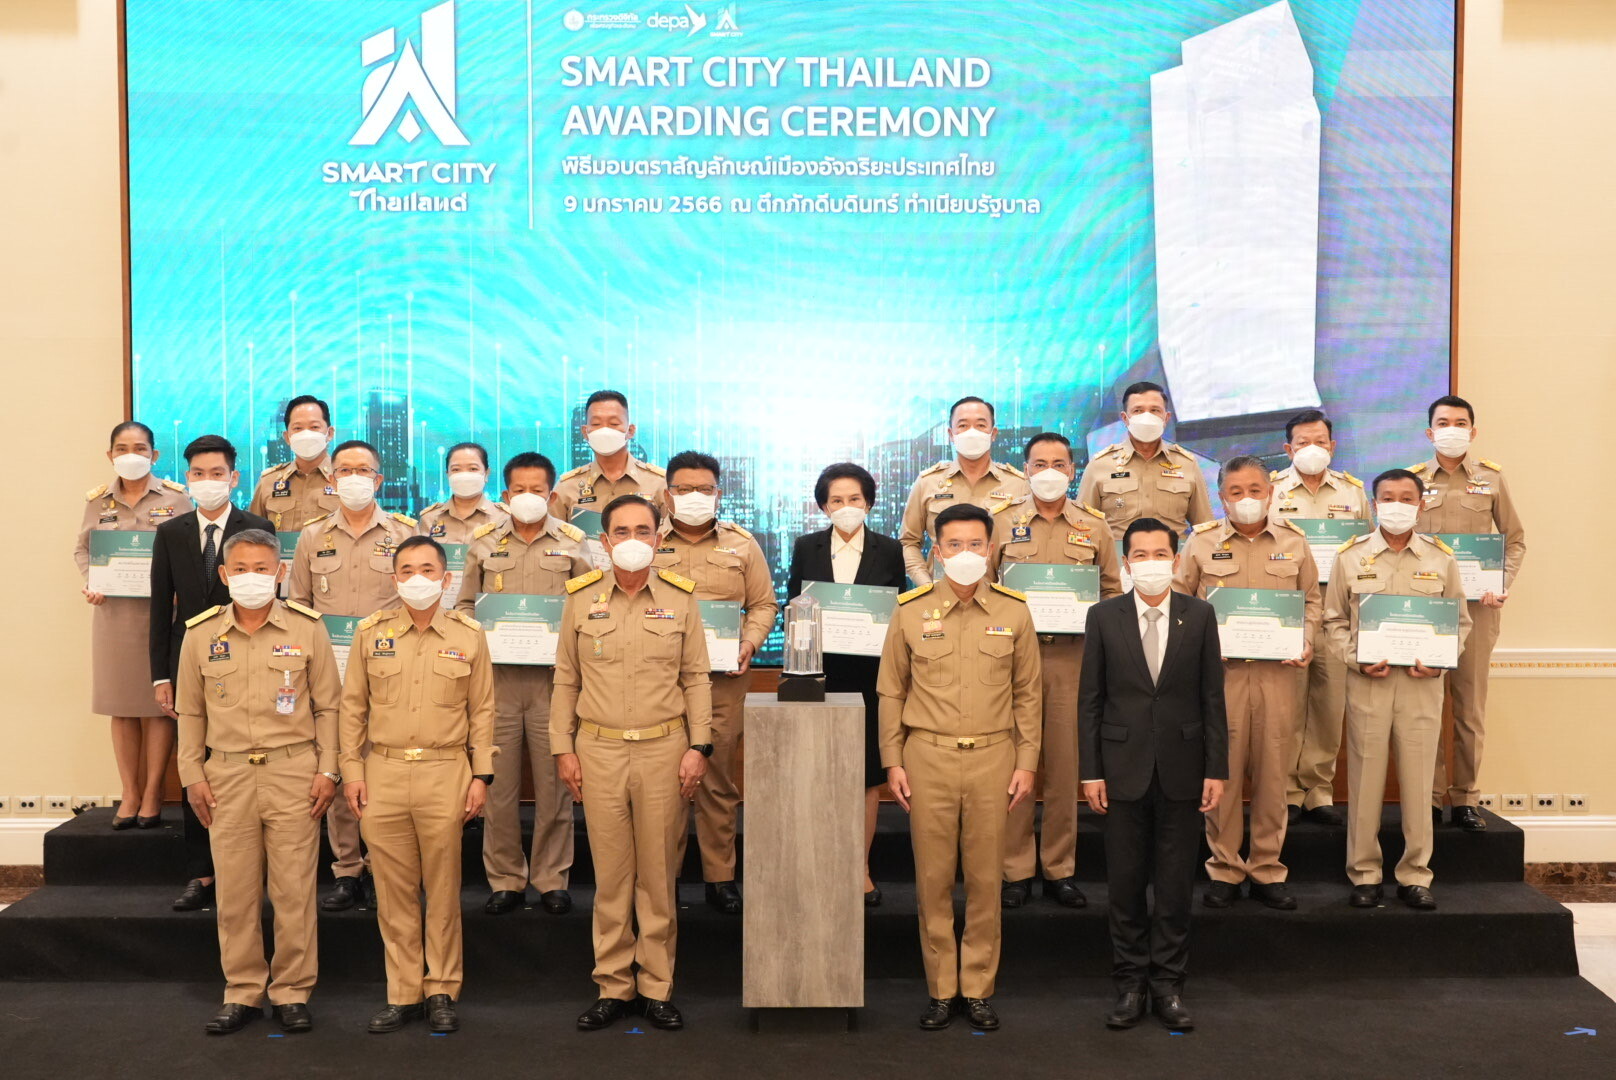 "พลเอก ประยุทธ์" เป็นประธานมอบตราสัญลักษณ์เมืองอัจฉริยะประเทศไทย